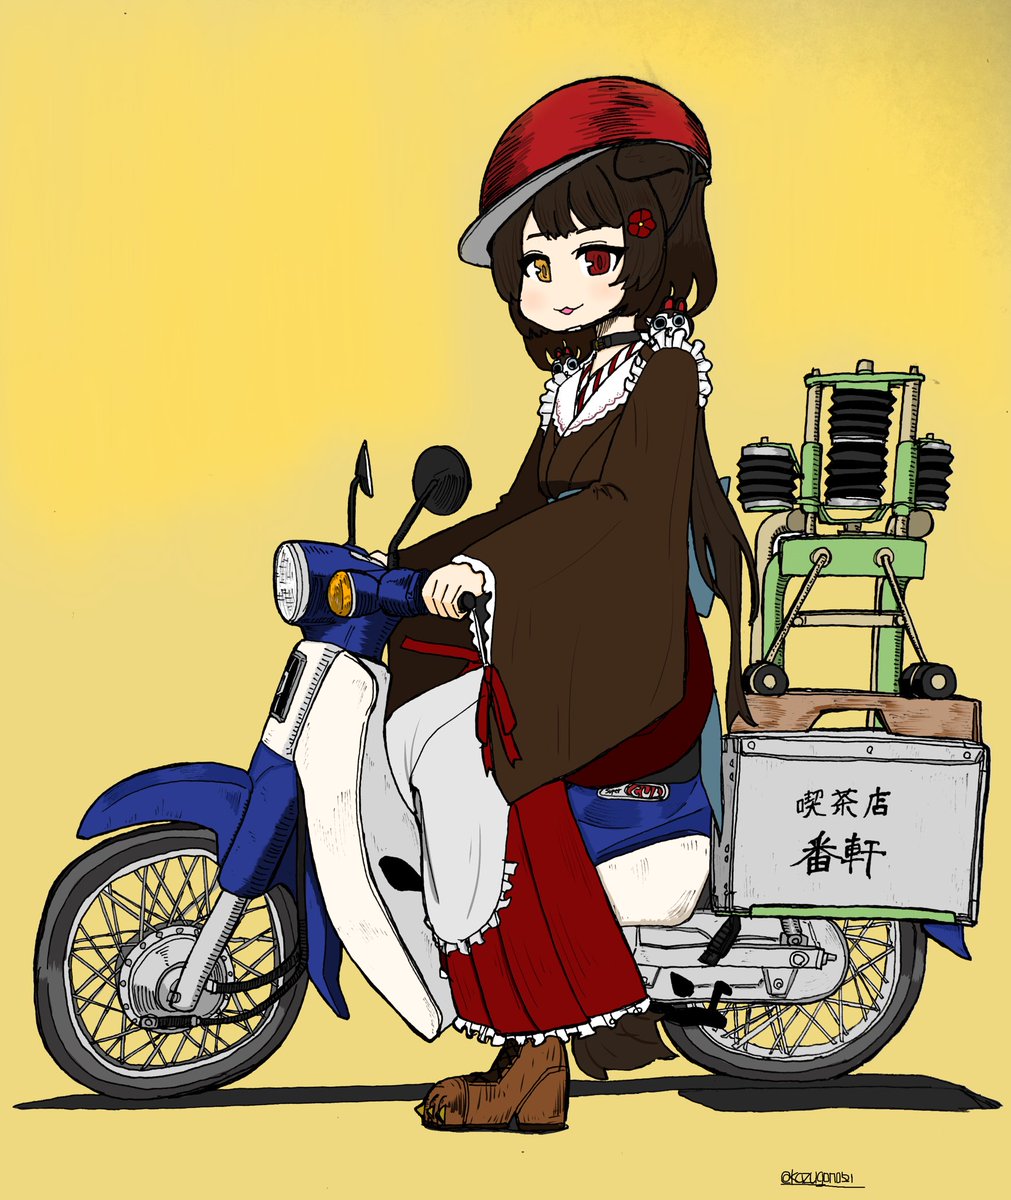 戌亥とこ 「出前カブ良いですよね #バイクの真横を載せて5RT来たら強者 」|DATSANのイラスト